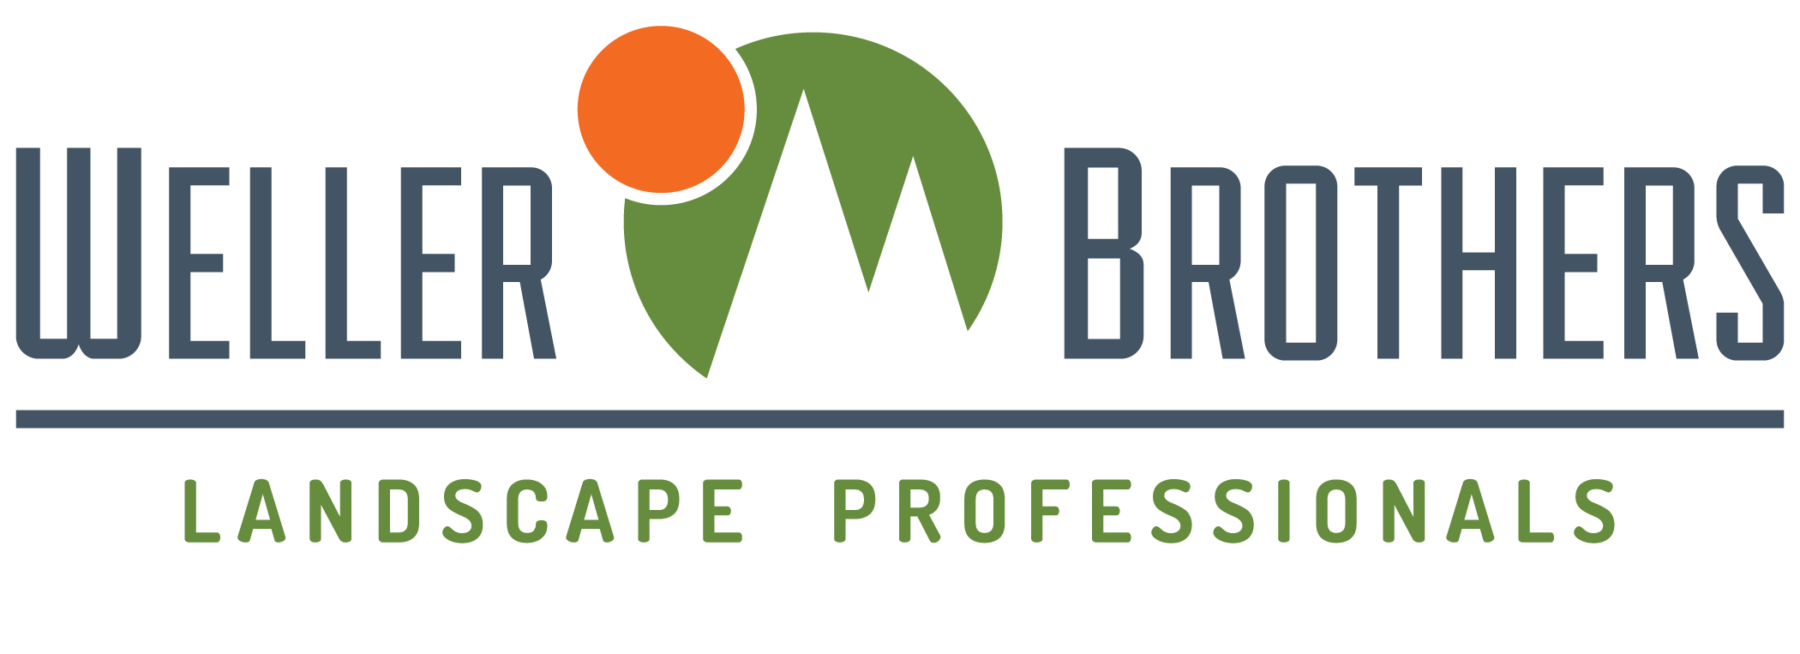 Weller Brothers Landscape Professionals logo